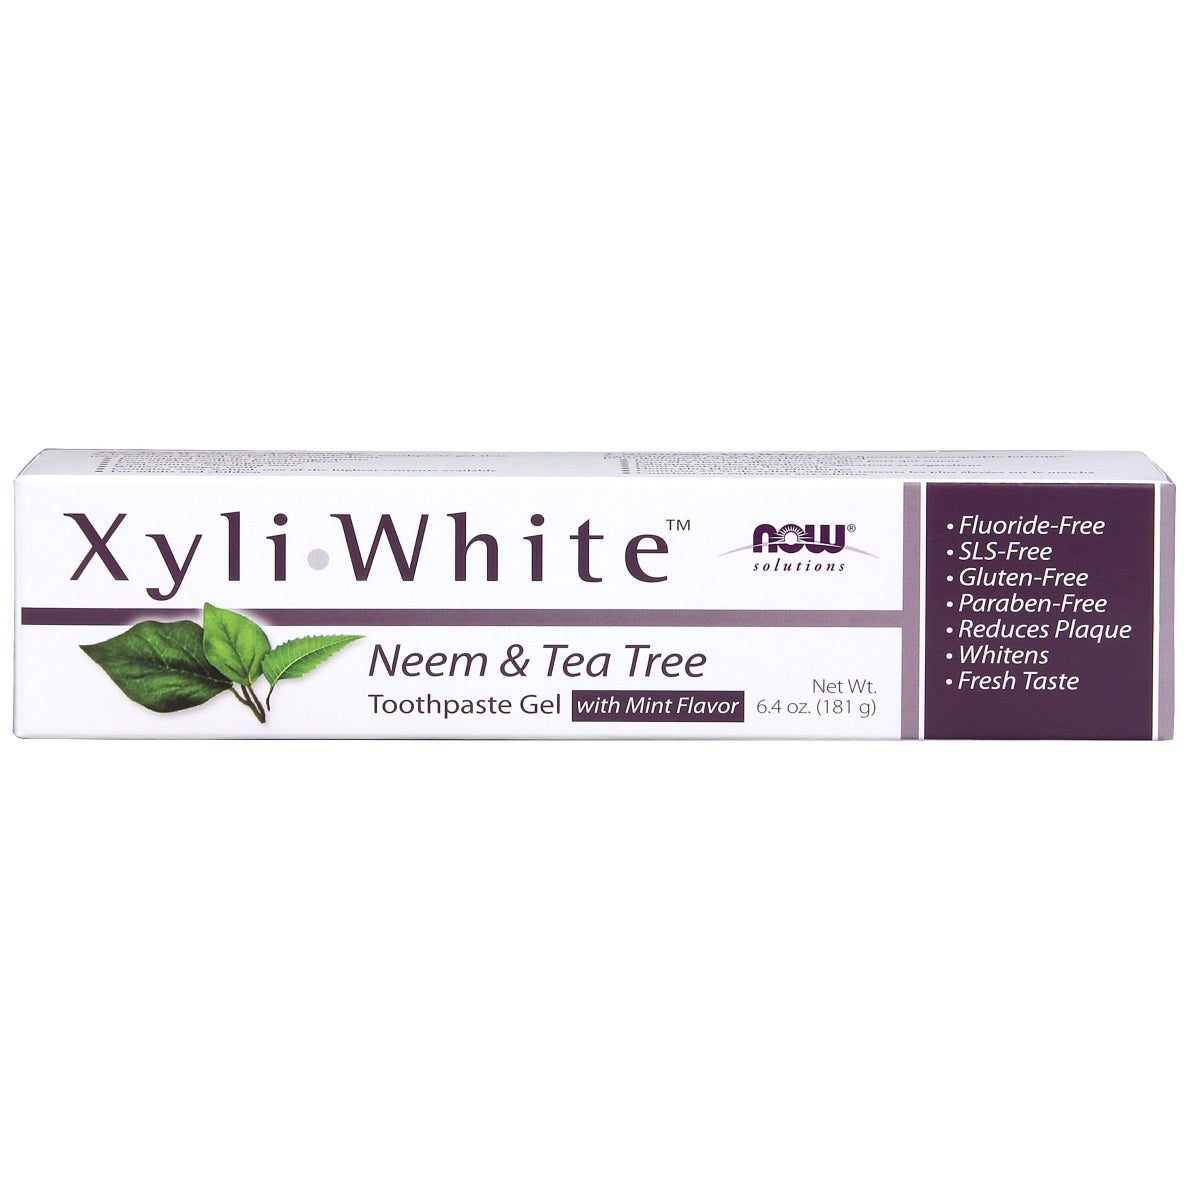 Primary image of Xyli-Toothpaste - Neem + Tea Tree